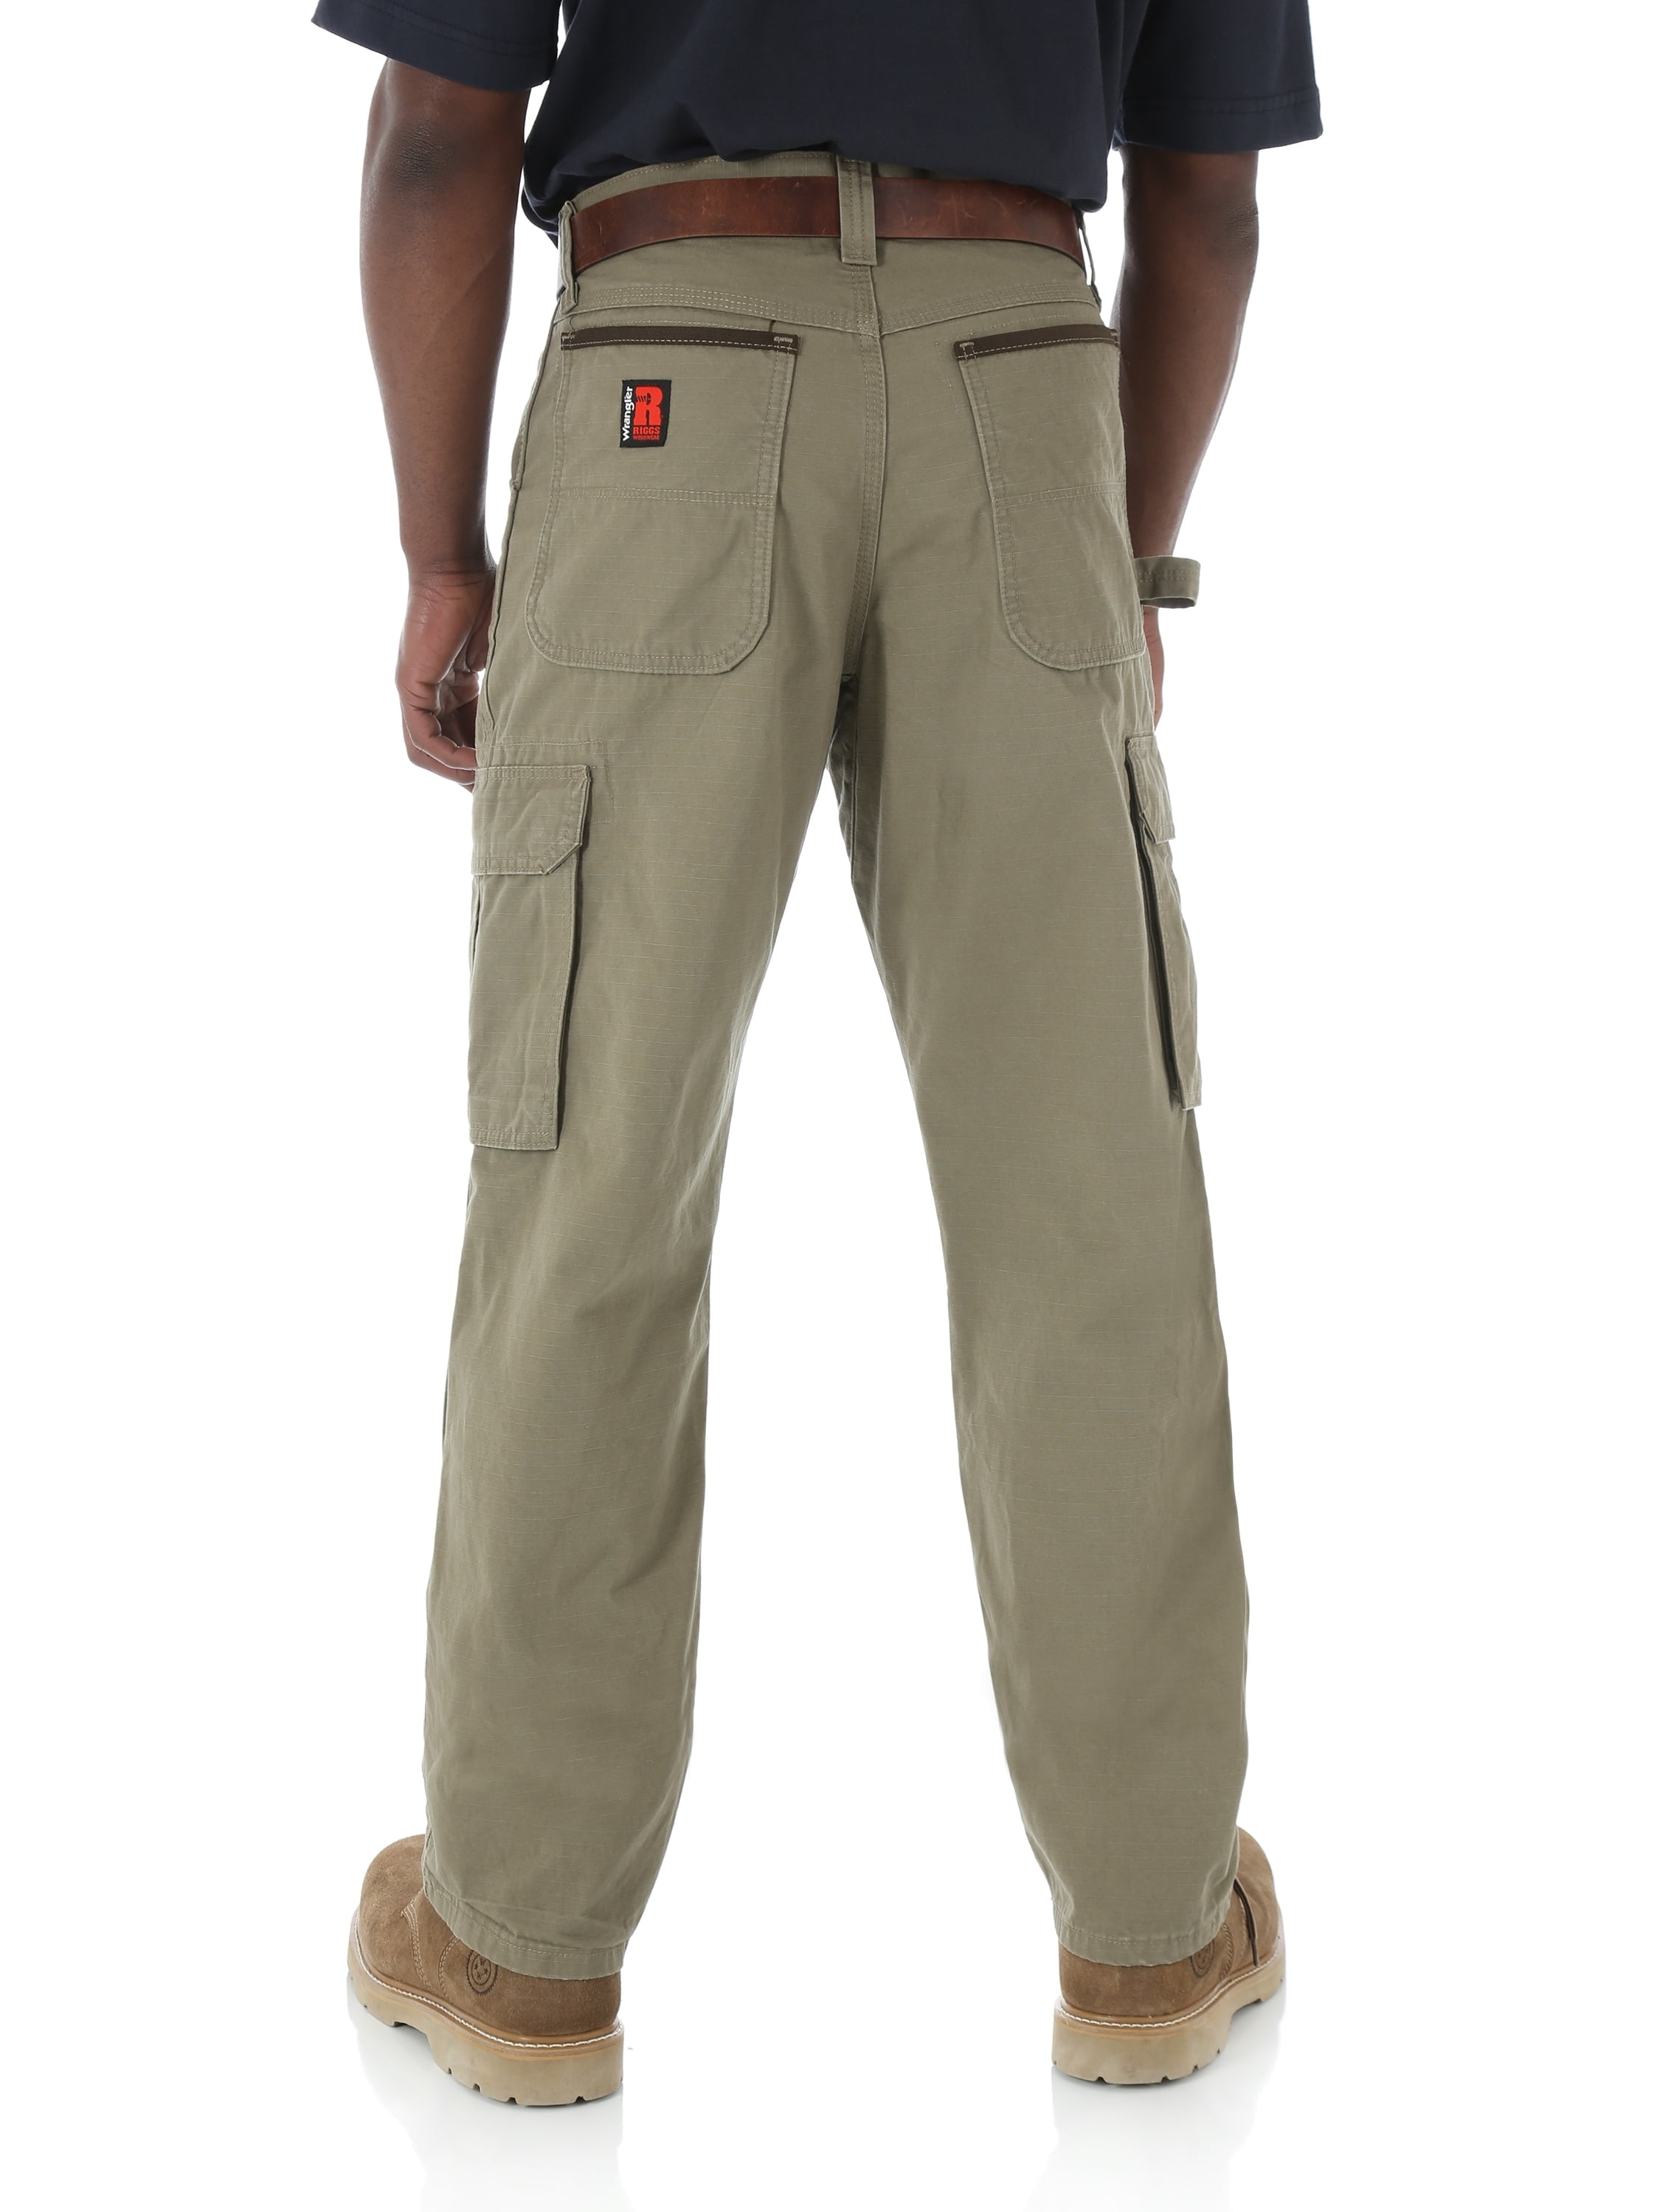 Wrangler Men's RIGGS Workwear Ripstop Ranger Pants - Bark, Bark, 36X36 -  